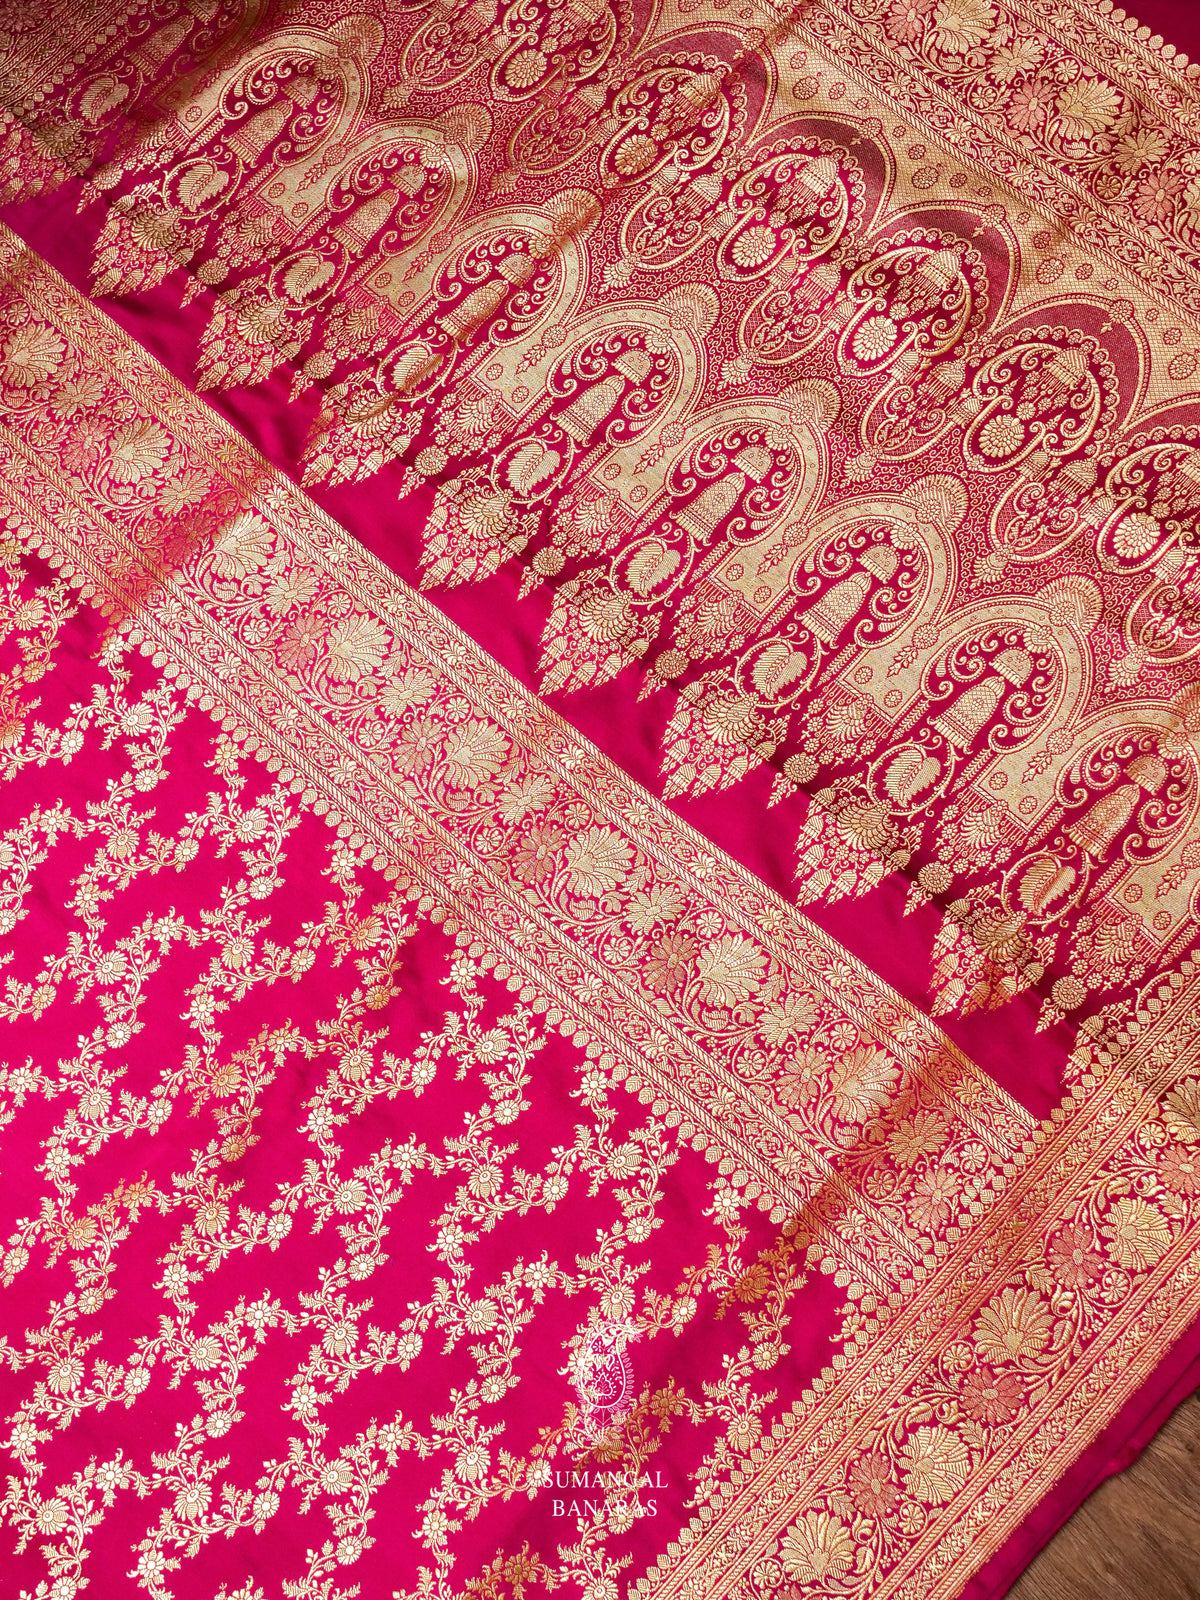 Handwoven Rani Pink Banarasi Katan Silk Saree